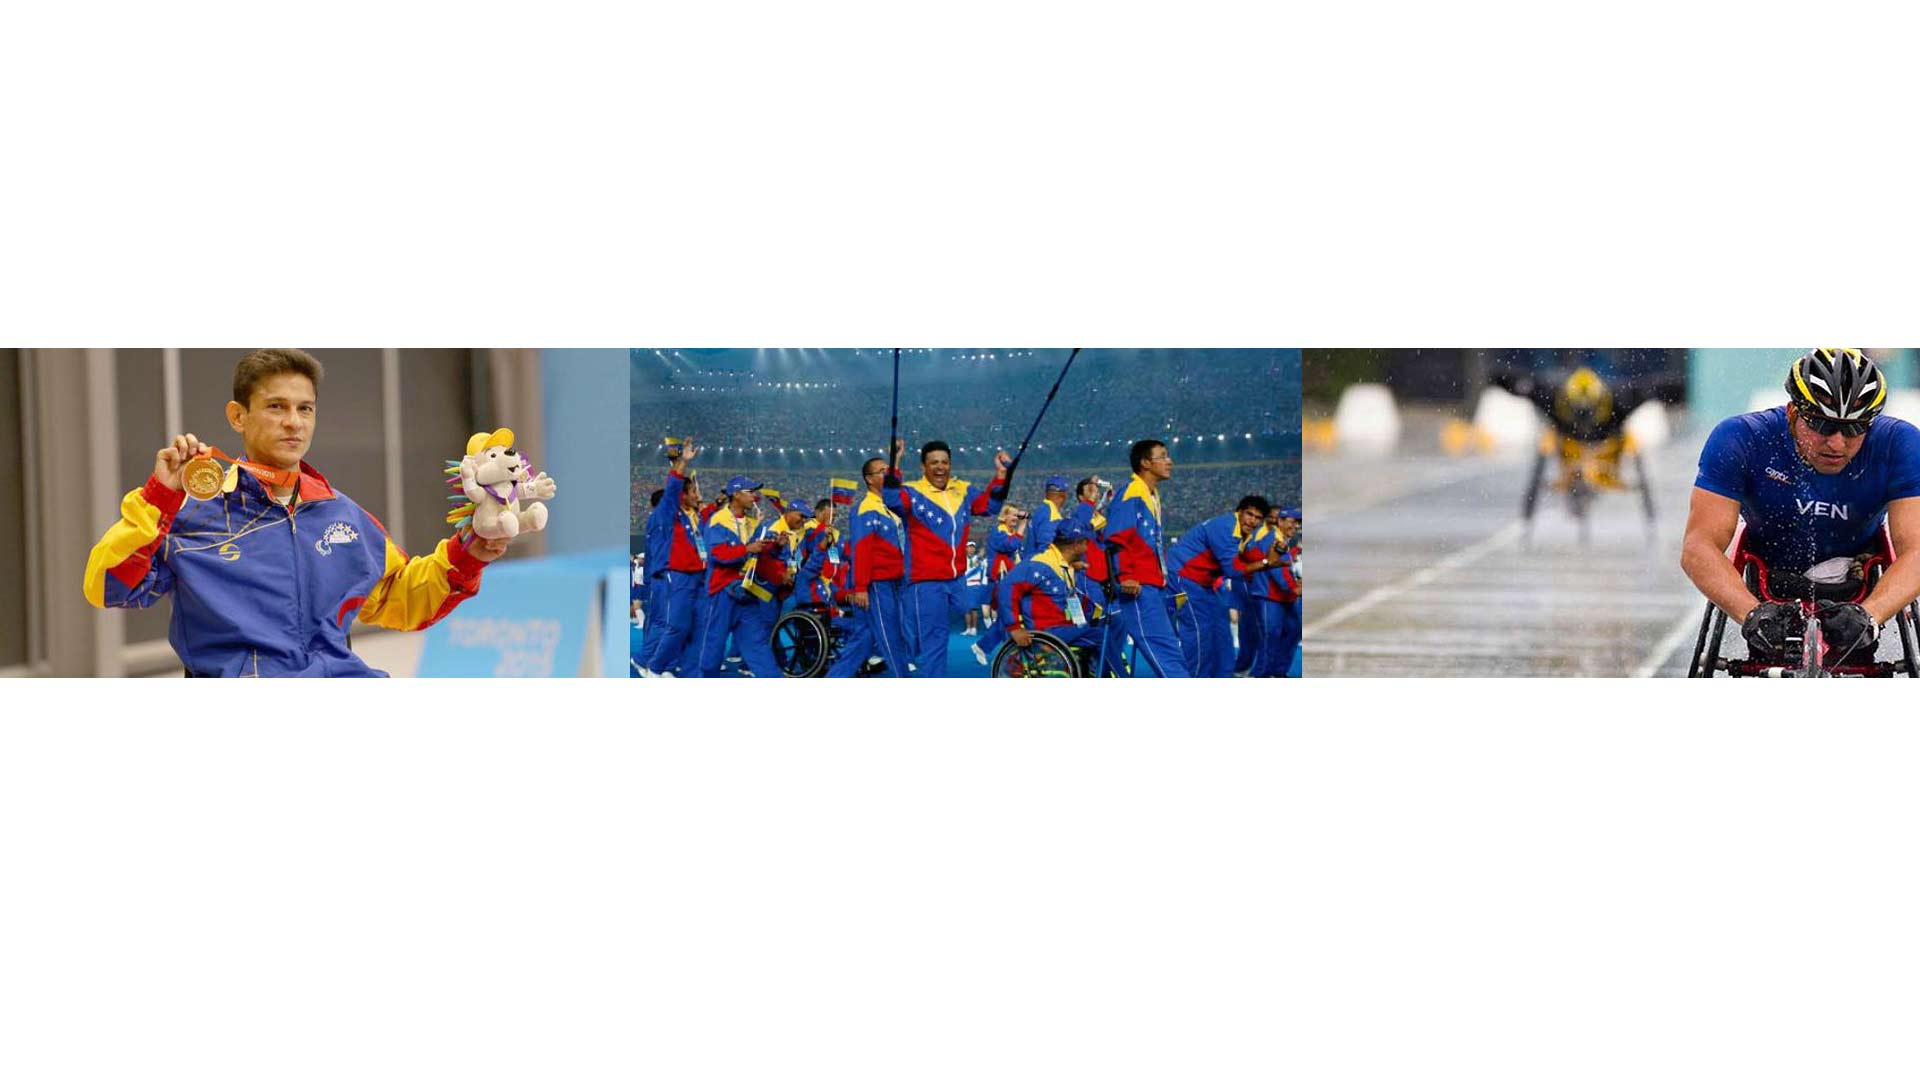 Venezuela terminó su participación logrando un total de 43 medallas, liderada por Belkys Mota con 4 premios